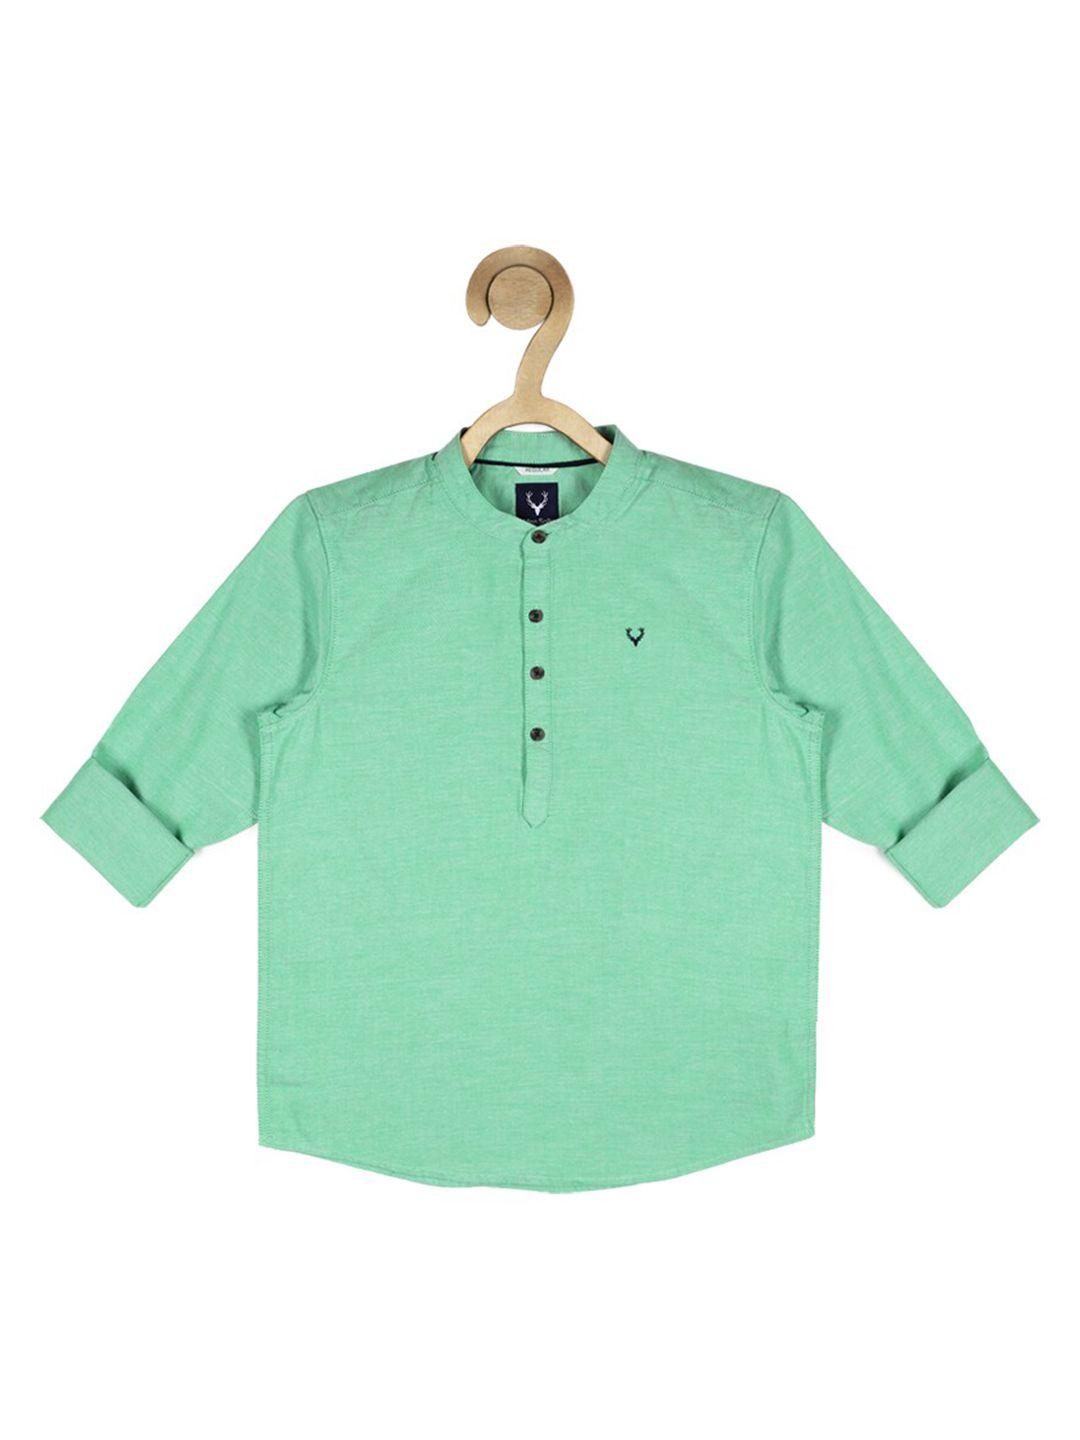 Allen Solly Junior Boys Green Casual Cotton Shirt